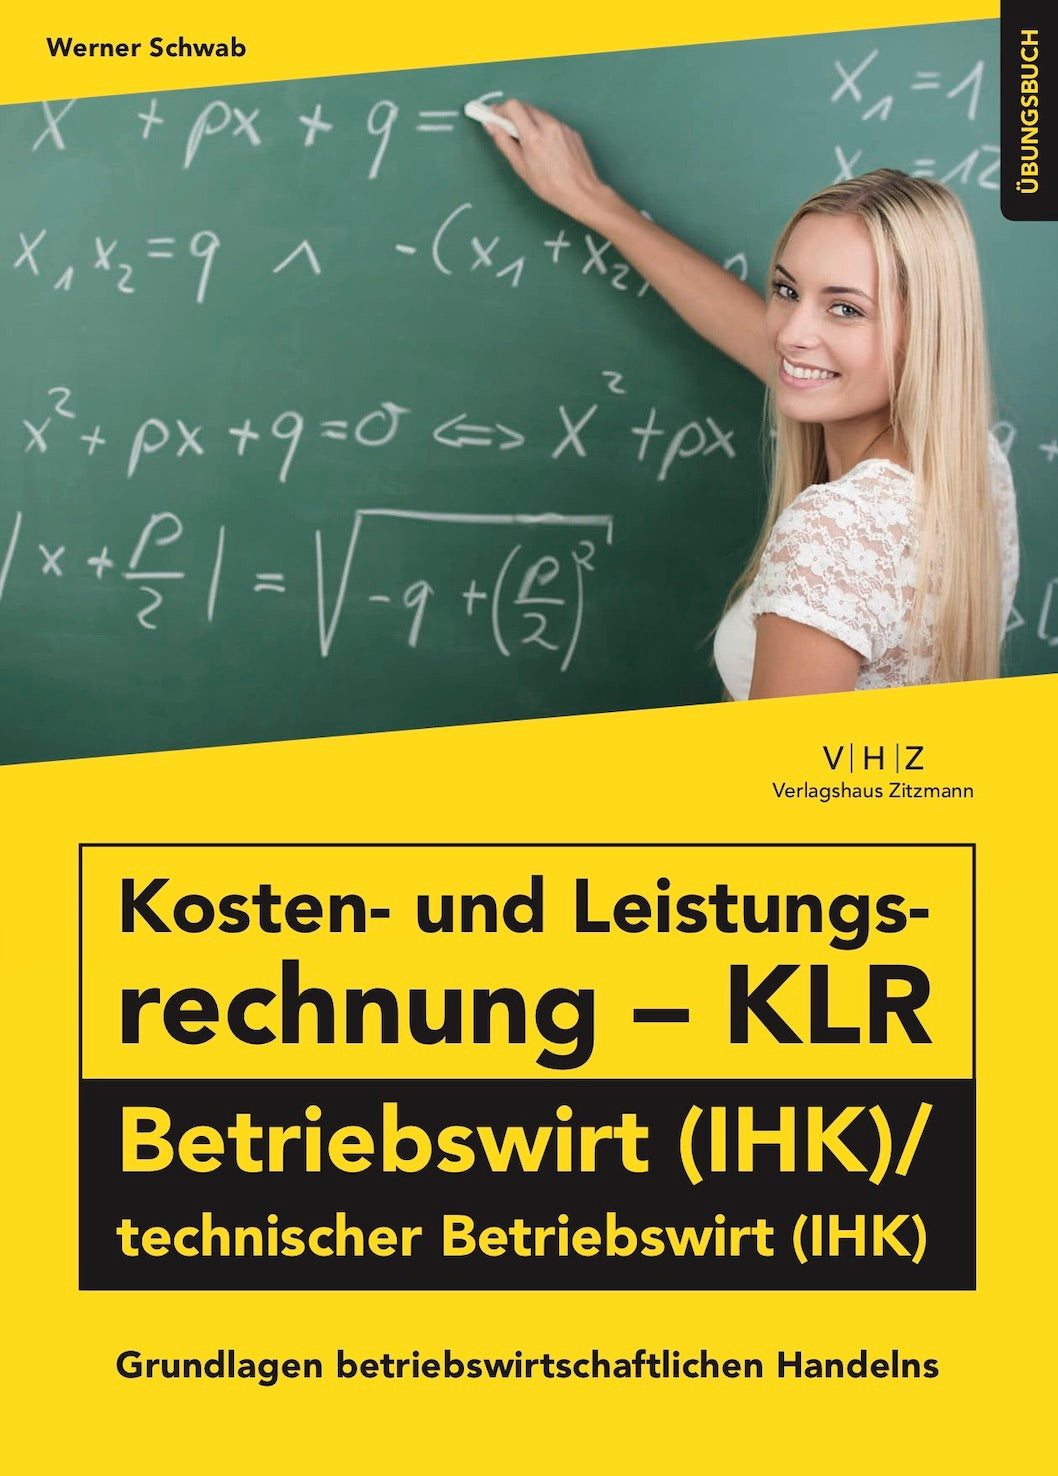 Kosten- und Leistungsrechnung (KLR) BETRIEBSWIRT (IHK)/technischer Betriebswirt (IHK) - Grundlagen betriebswirtschaftlichen Handelns Übungsbuch